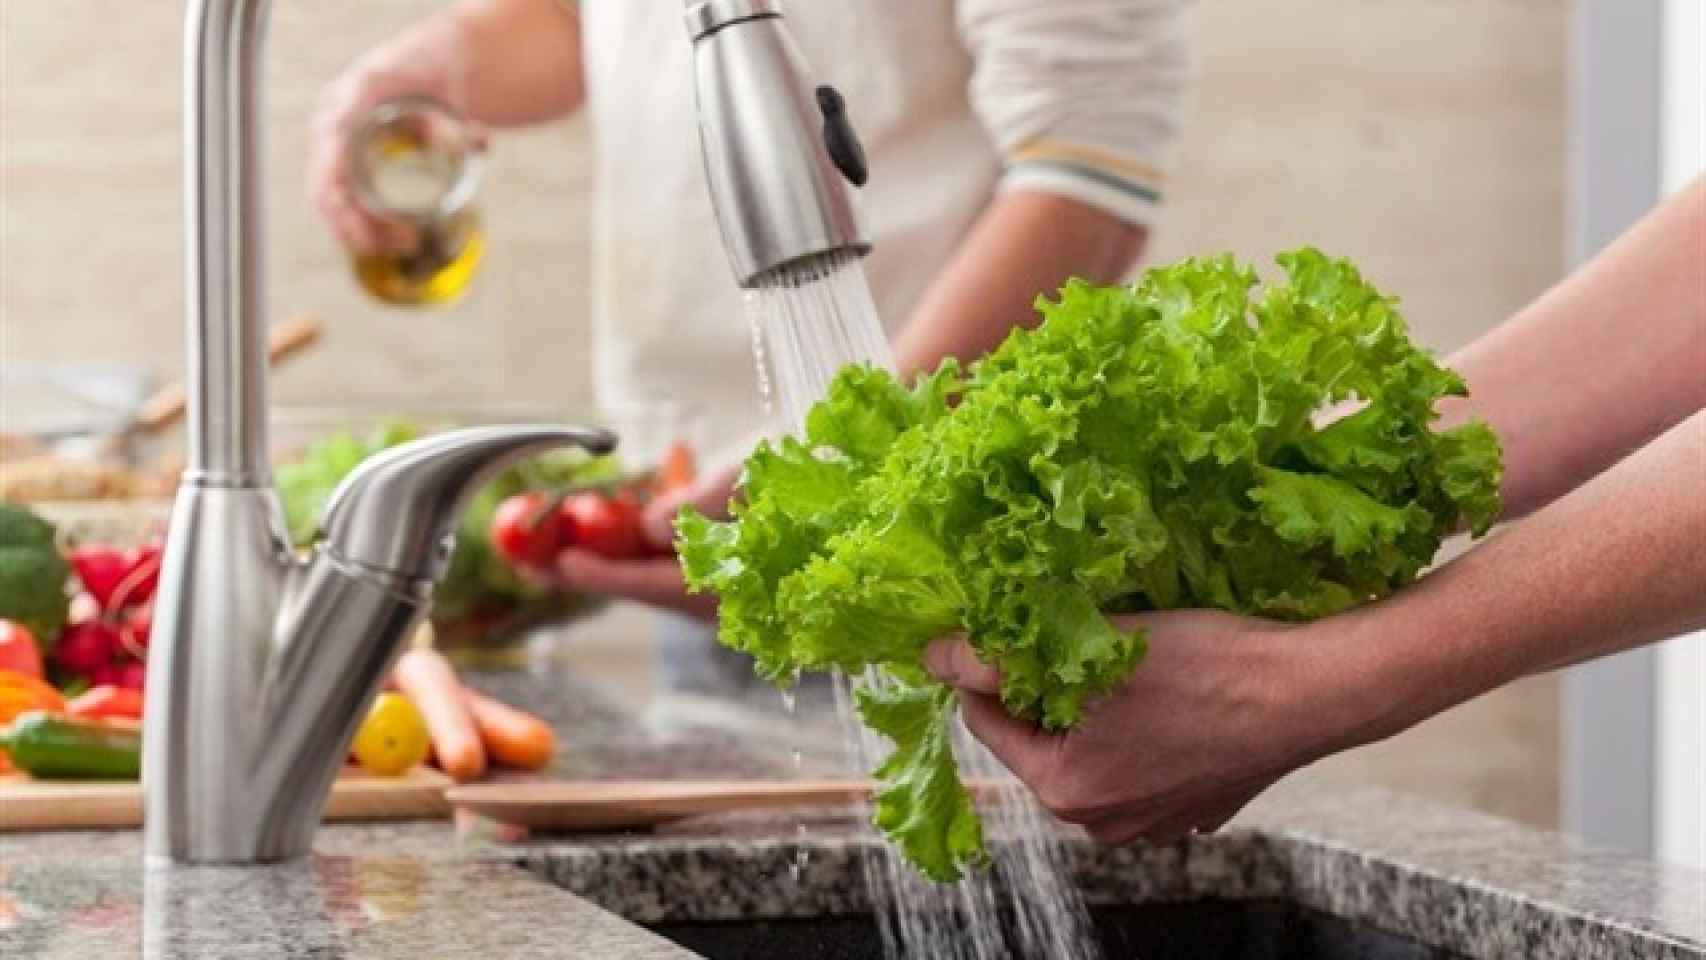 Lejía alimentaria para desinfectar los alimentos sin dañar nuestra salud